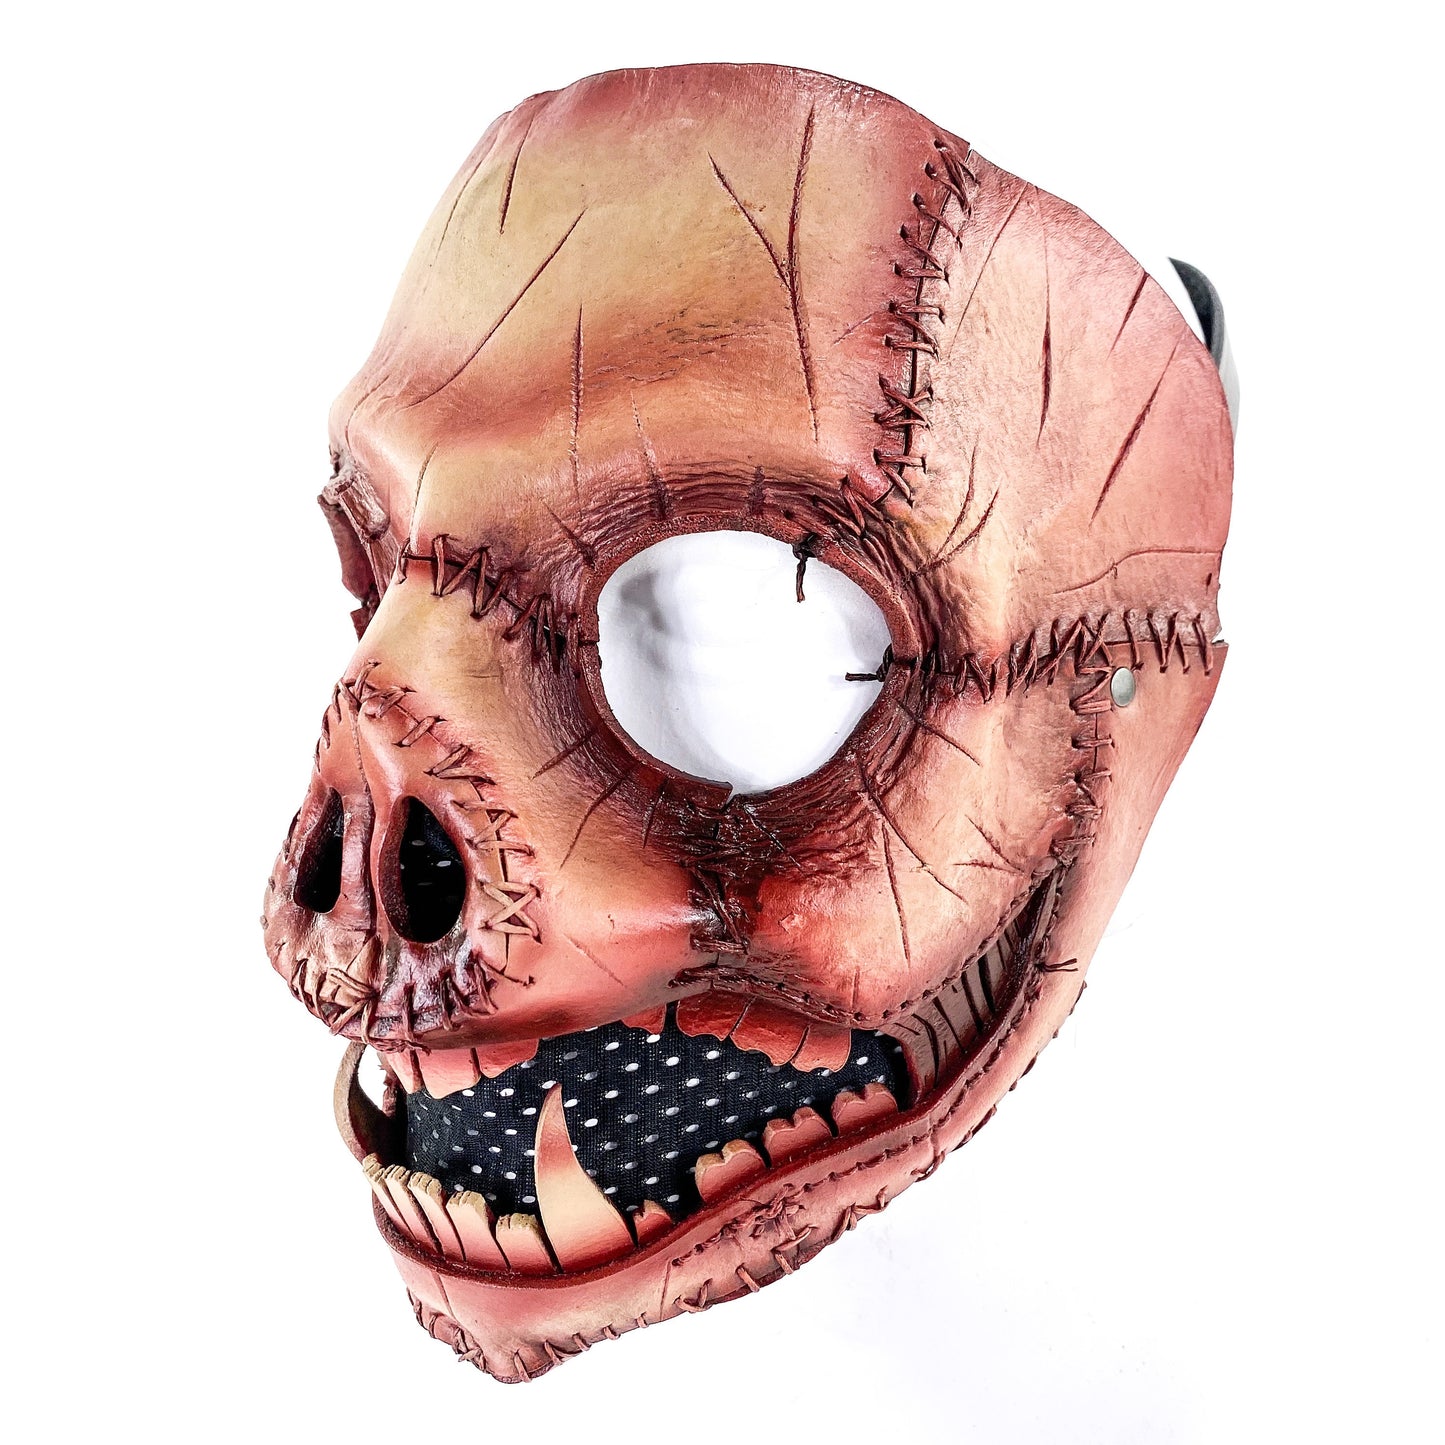 Evil Swine - Genuine Leather Mask - Freshly Butchered Horror Pig  - Handmade Full Face Cover for Halloween or Performance Costume